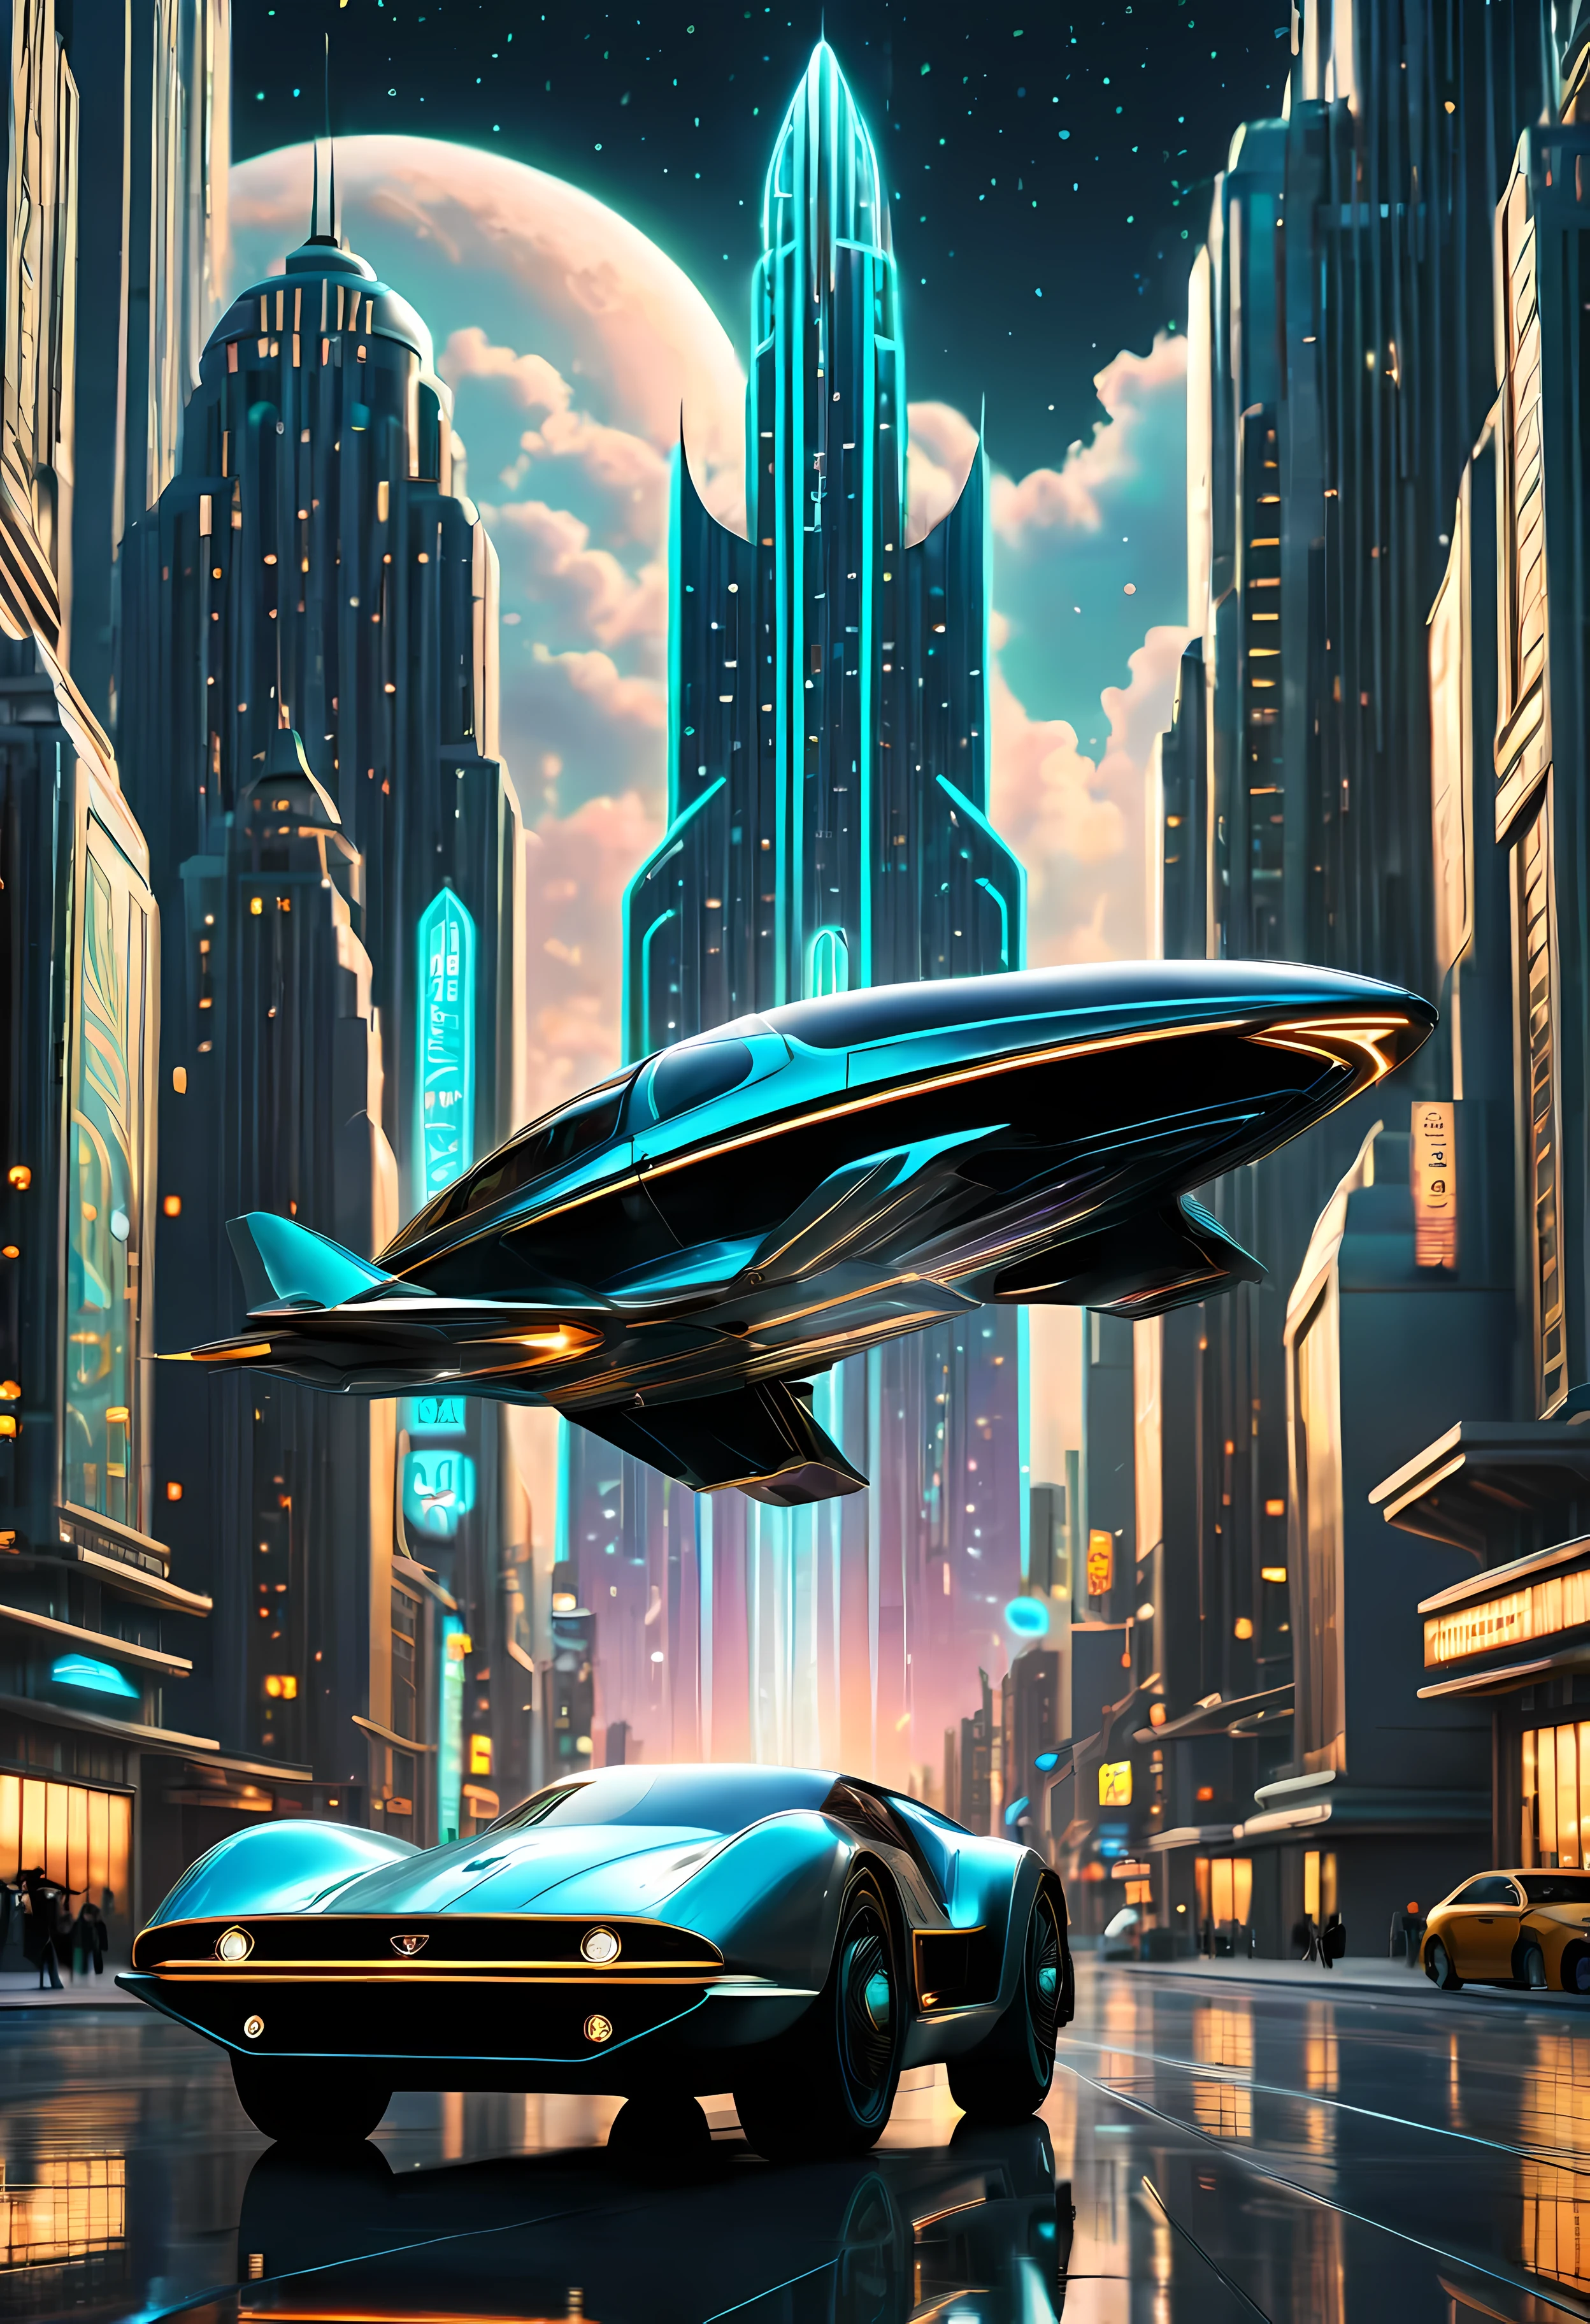 装饰艺术风格 flying car, 装饰艺术风格 science fiction, 装饰艺术风格 future skyscrapers

(最好的品質,4k,8K,高解析度,傑作:1.2),超詳細,(實際的,photo實際的,photo-實際的:1.37),高動態範圍,超高畫質,演播室燈光,超細塗裝,銳利的焦點,基於物理的渲染,極為詳細的描述,專業的,鮮豔的色彩,散景,装饰艺术风格,裝飾藝術建築,流線型設計,圓滑的線條,幾何形狀,鍍鉻裝飾,豪華的內裝,復古未來主義,发光的霓虹灯,都市環境,未来城市景观,摩天大楼直达云层,飛行汽車懸停在空中,優美的動作,先進的推進系統,光泽的金属机身,拋光錶面,受到科幻启发,高科技產品,集成全息显示器,創新能源,無螺旋槳設計,优雅的翅膀优雅地展开,闪亮的星夜背景,汽车表面的反射,對細節的精緻關注,迷人的动感,美學和諧,未来无限可能,令人惊叹的创作.